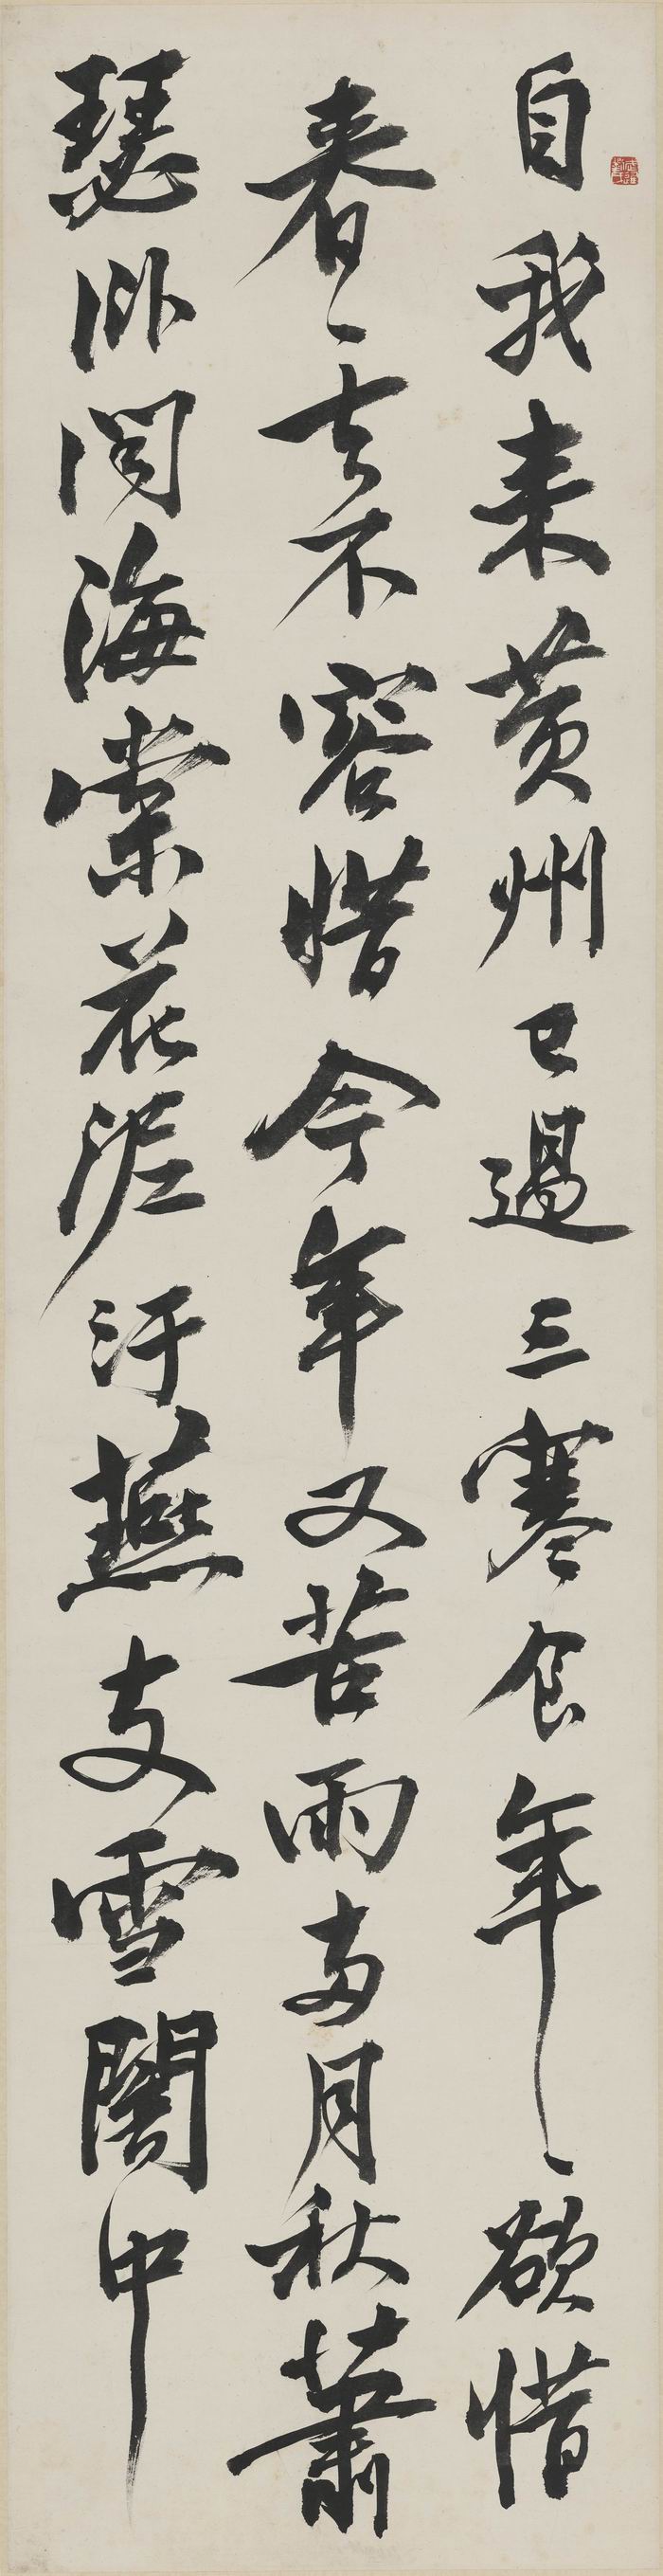 刘海粟 《临东坡行书》 1942年 纸本书法 刘海粟美术馆藏